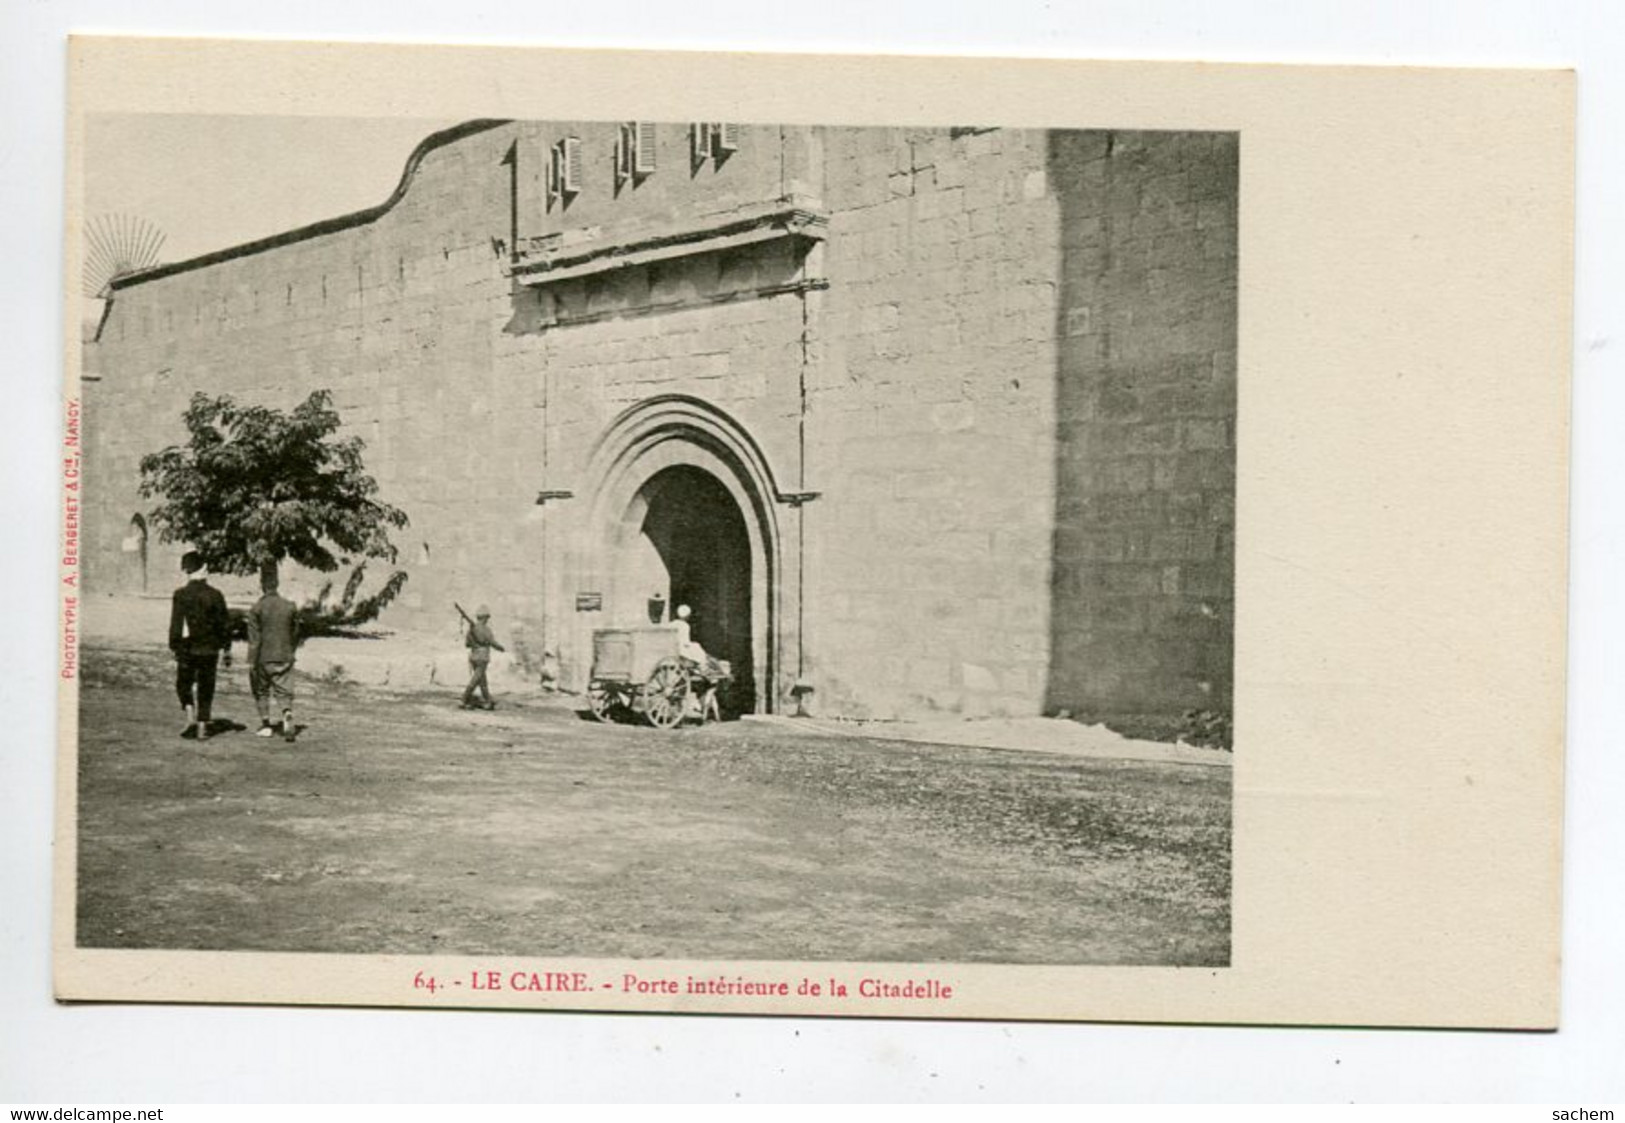 EGYPTE 018 LE CAIRE No 64 Cariole Ane Porte Interieure Citadelle  - 1900  Dos Non Divisé Bergeret - Cairo